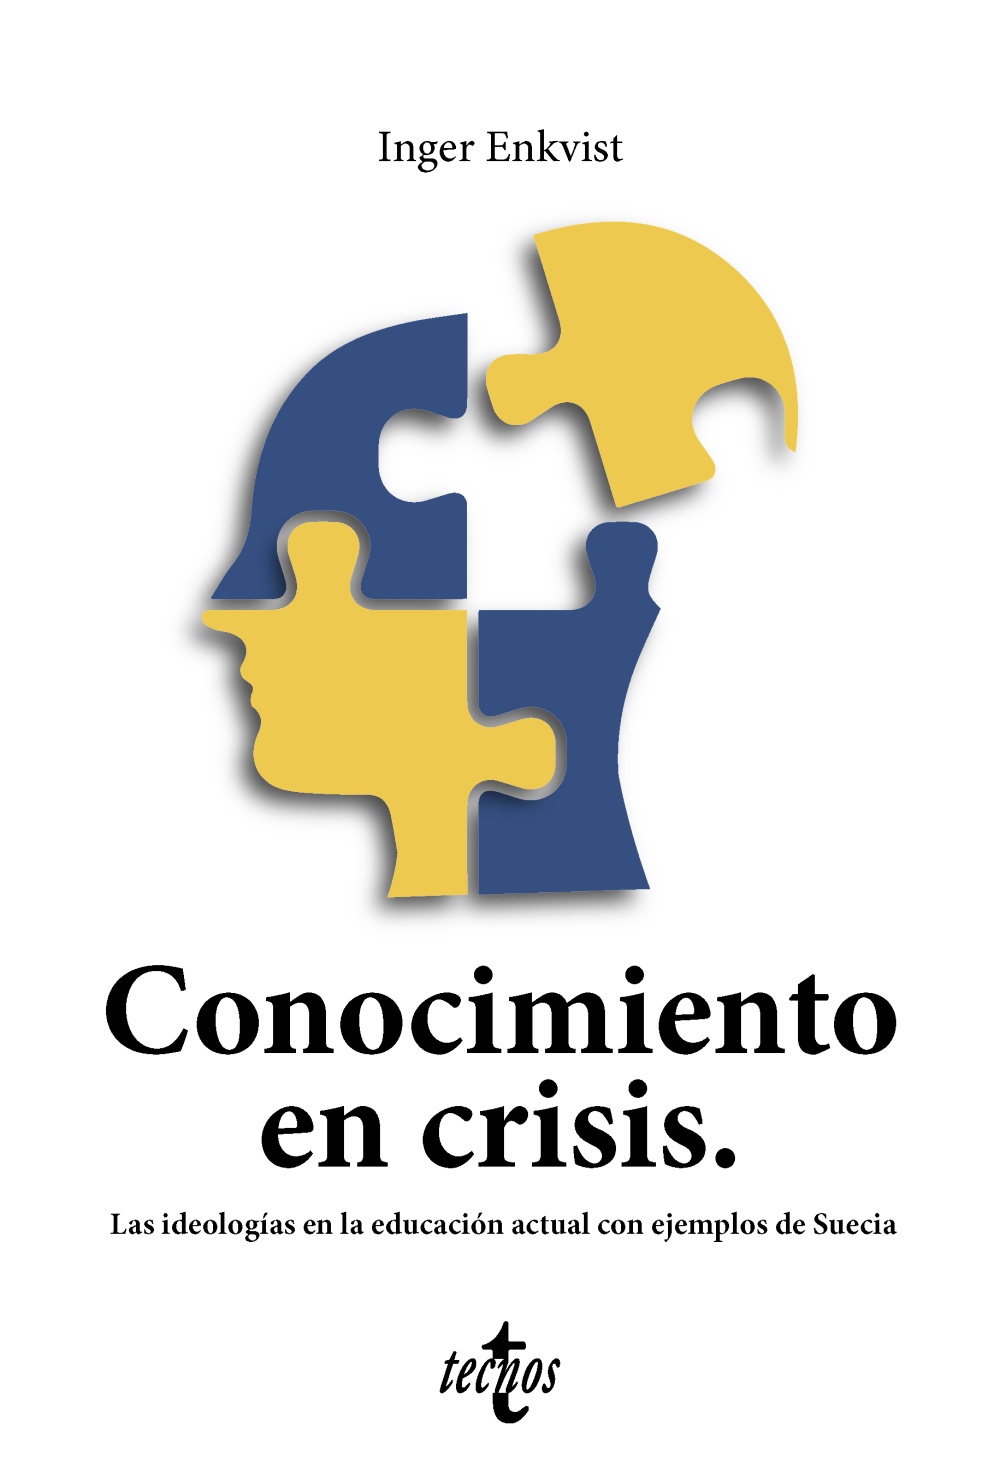 Imagen de portada del libro Conocimiento en crisis